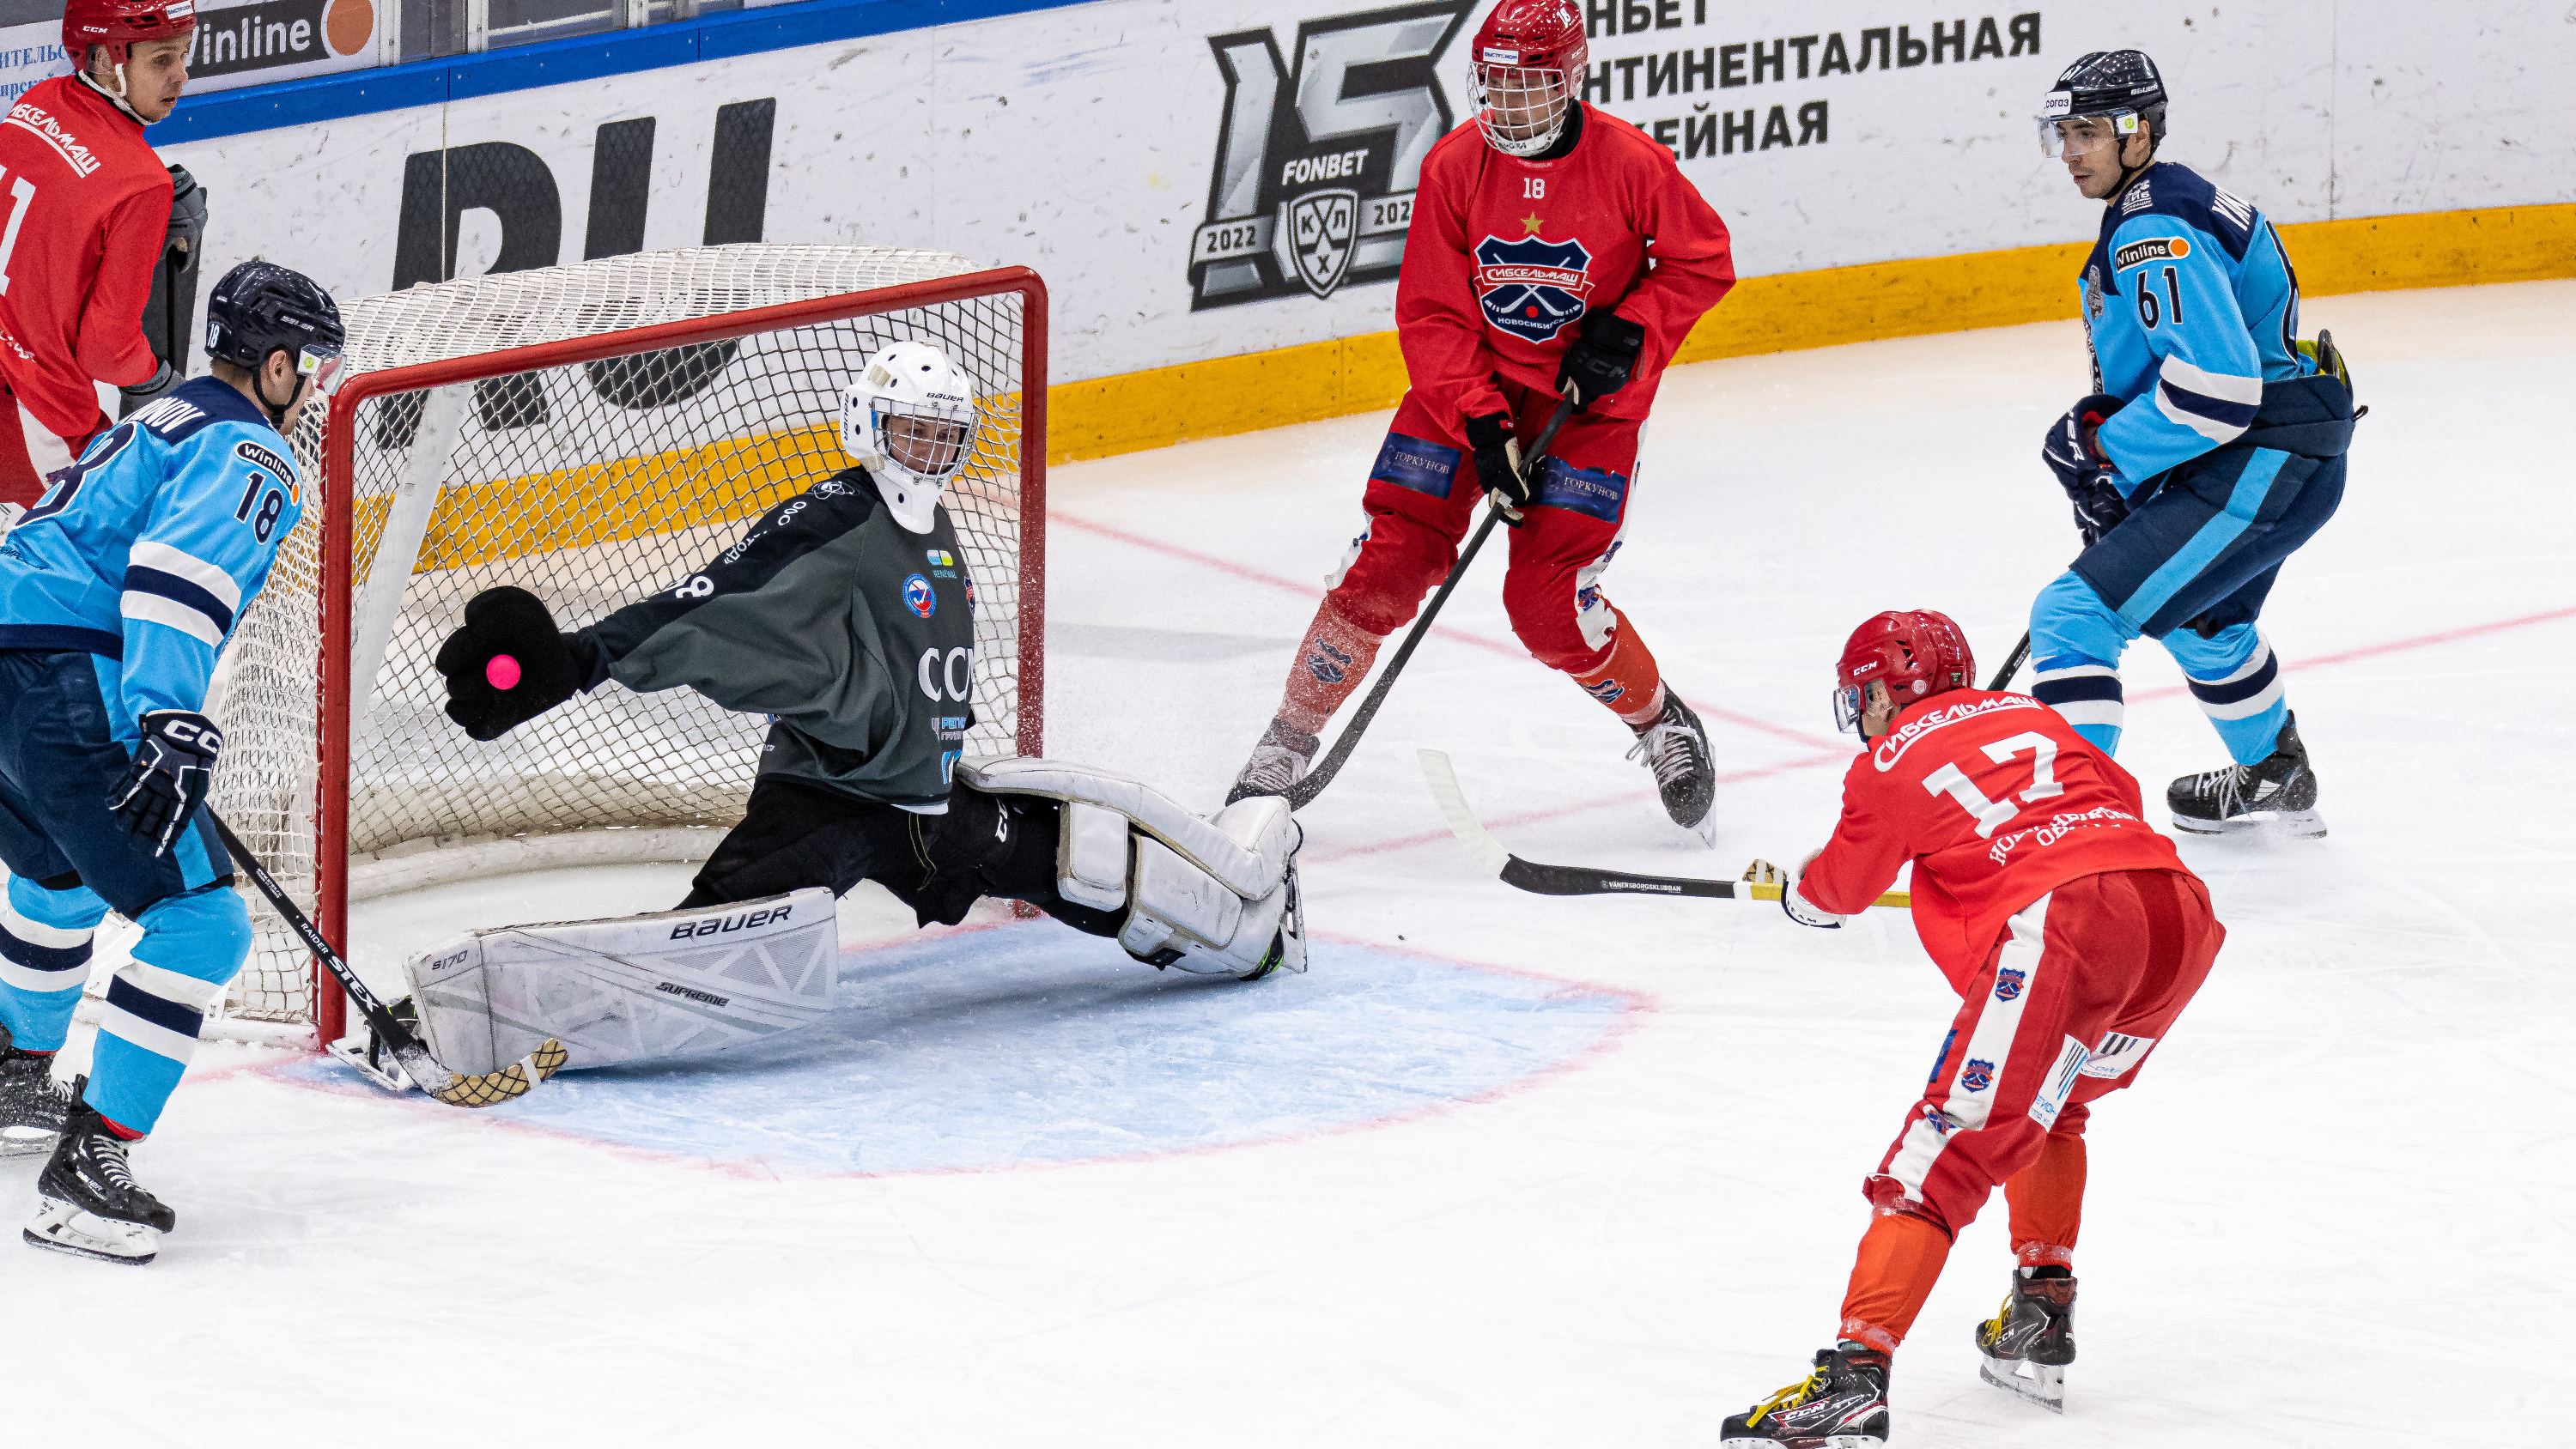 Хоккеисты «Сибири» после вылета из плей-офф перешли на игру с мячом — что из этого вышло